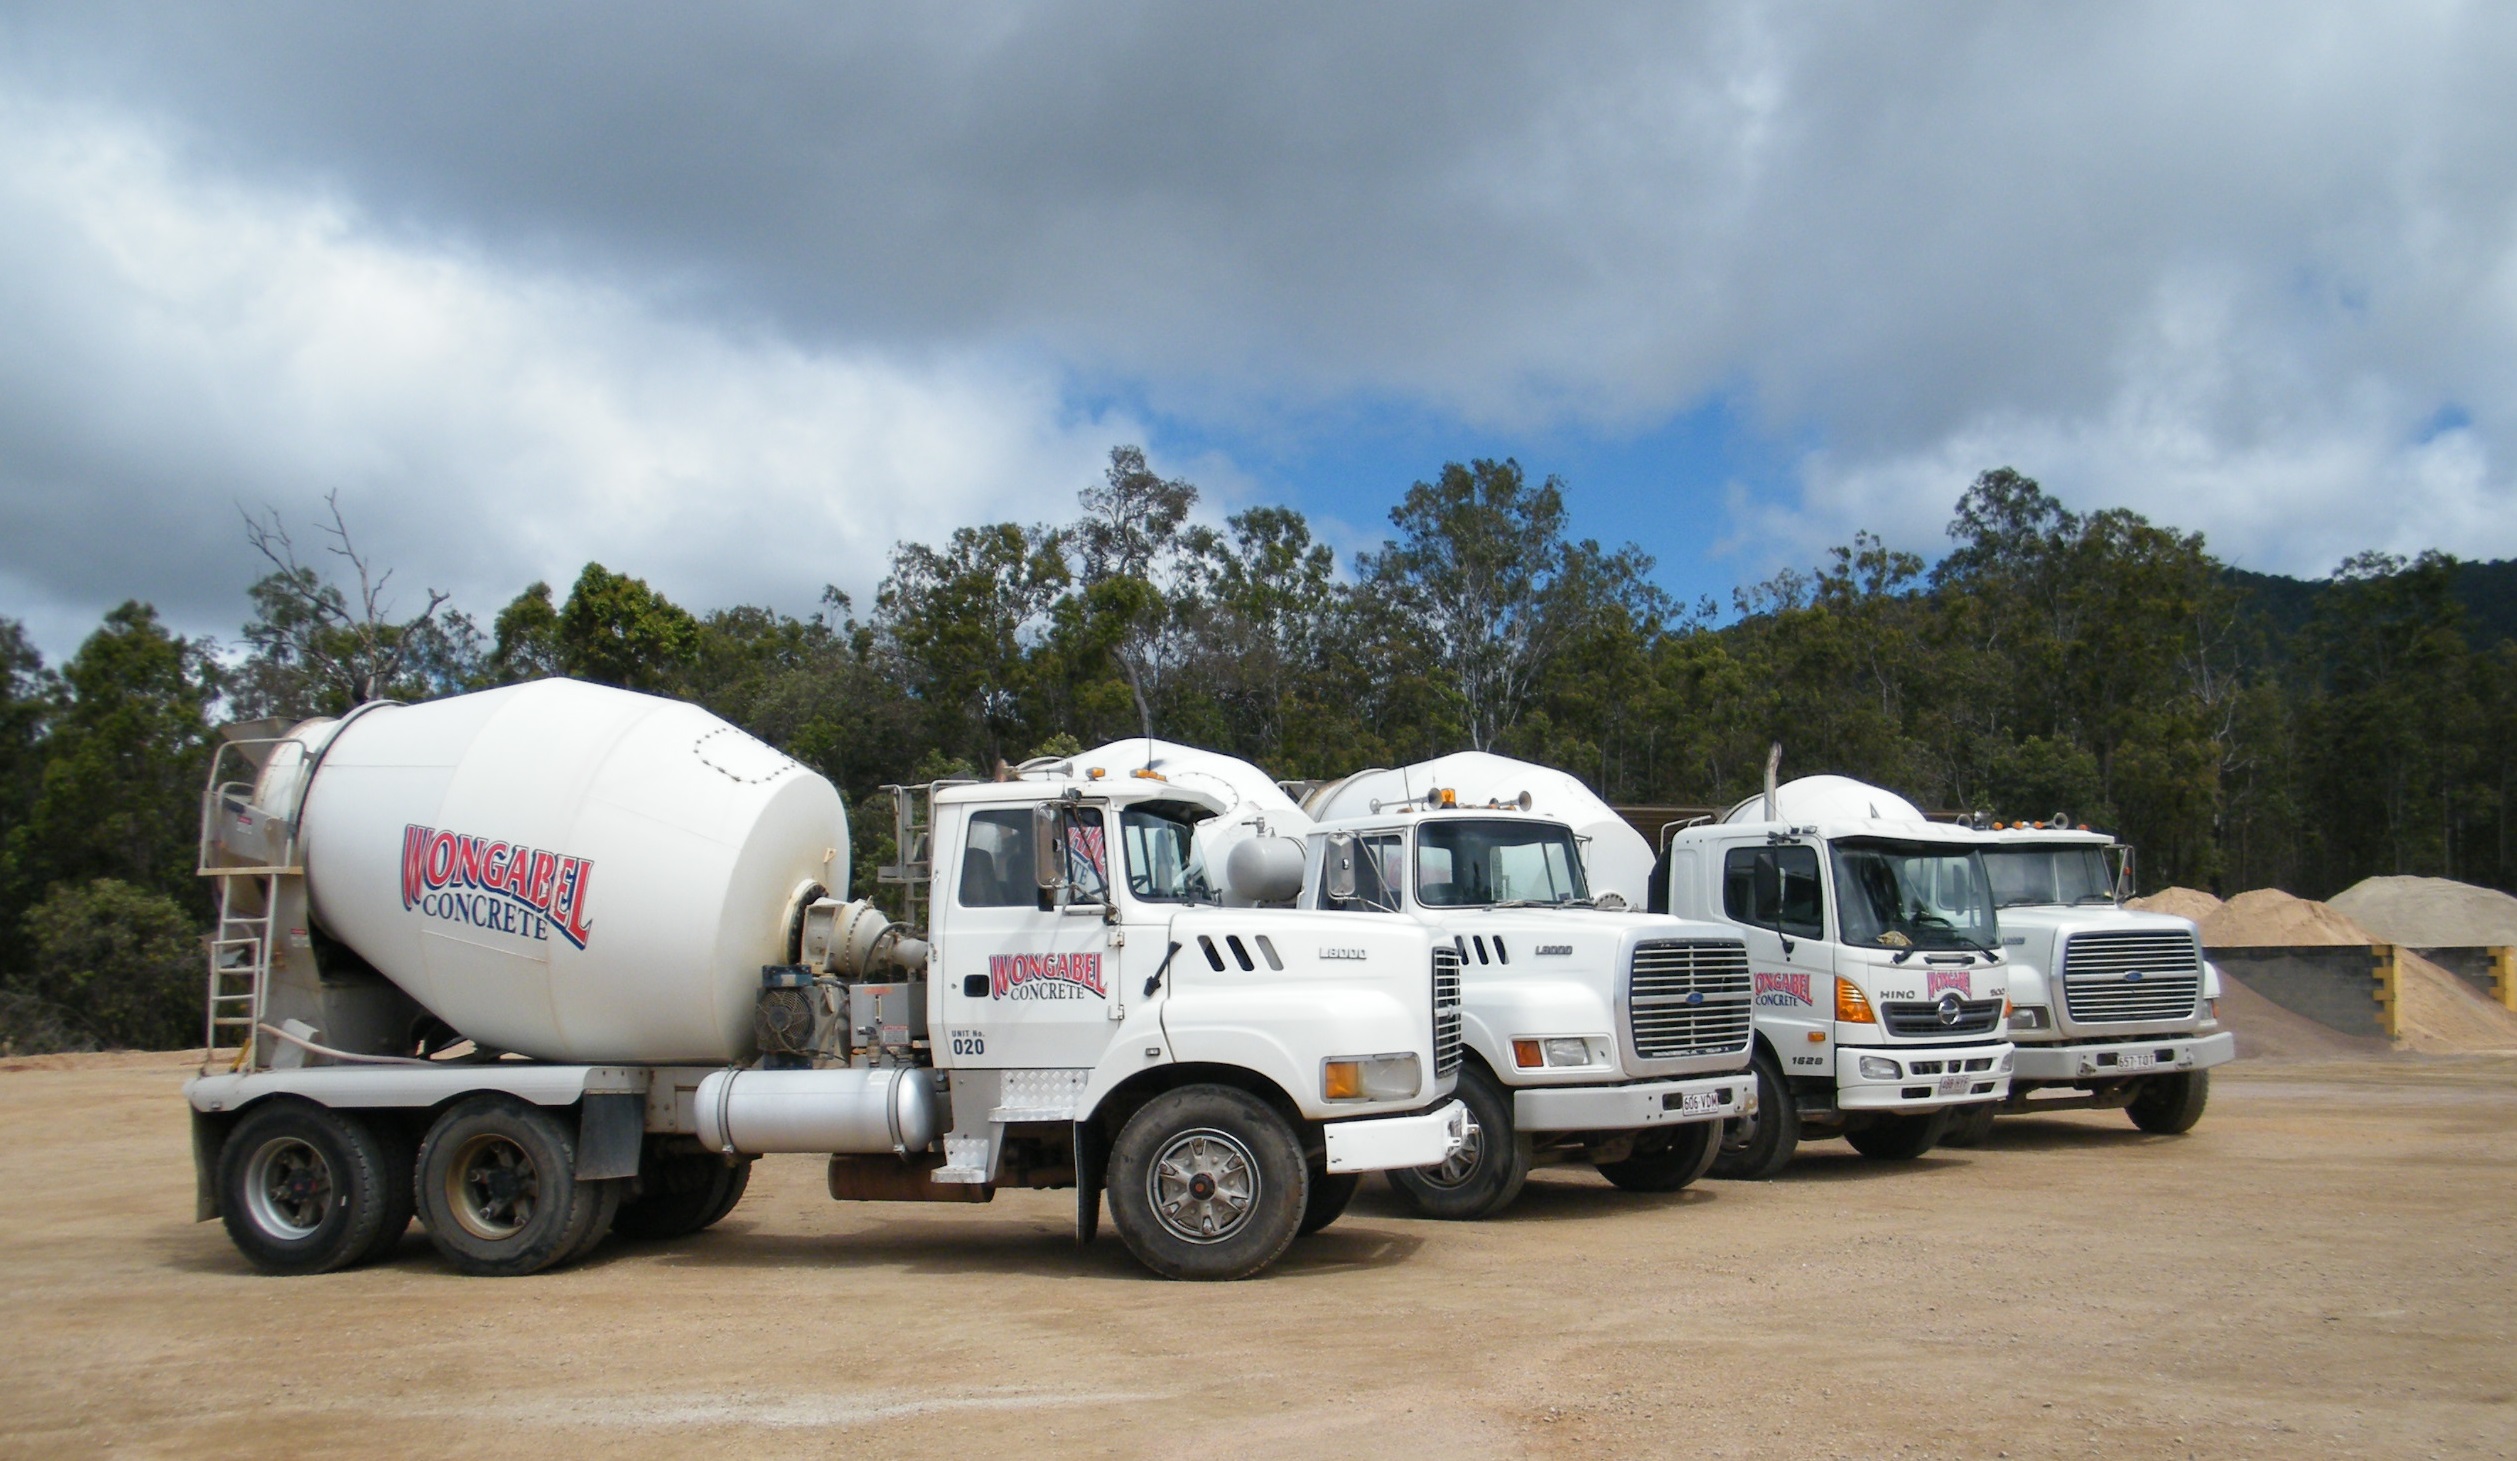 Wongabel Concrete - nine trucks available for any size job